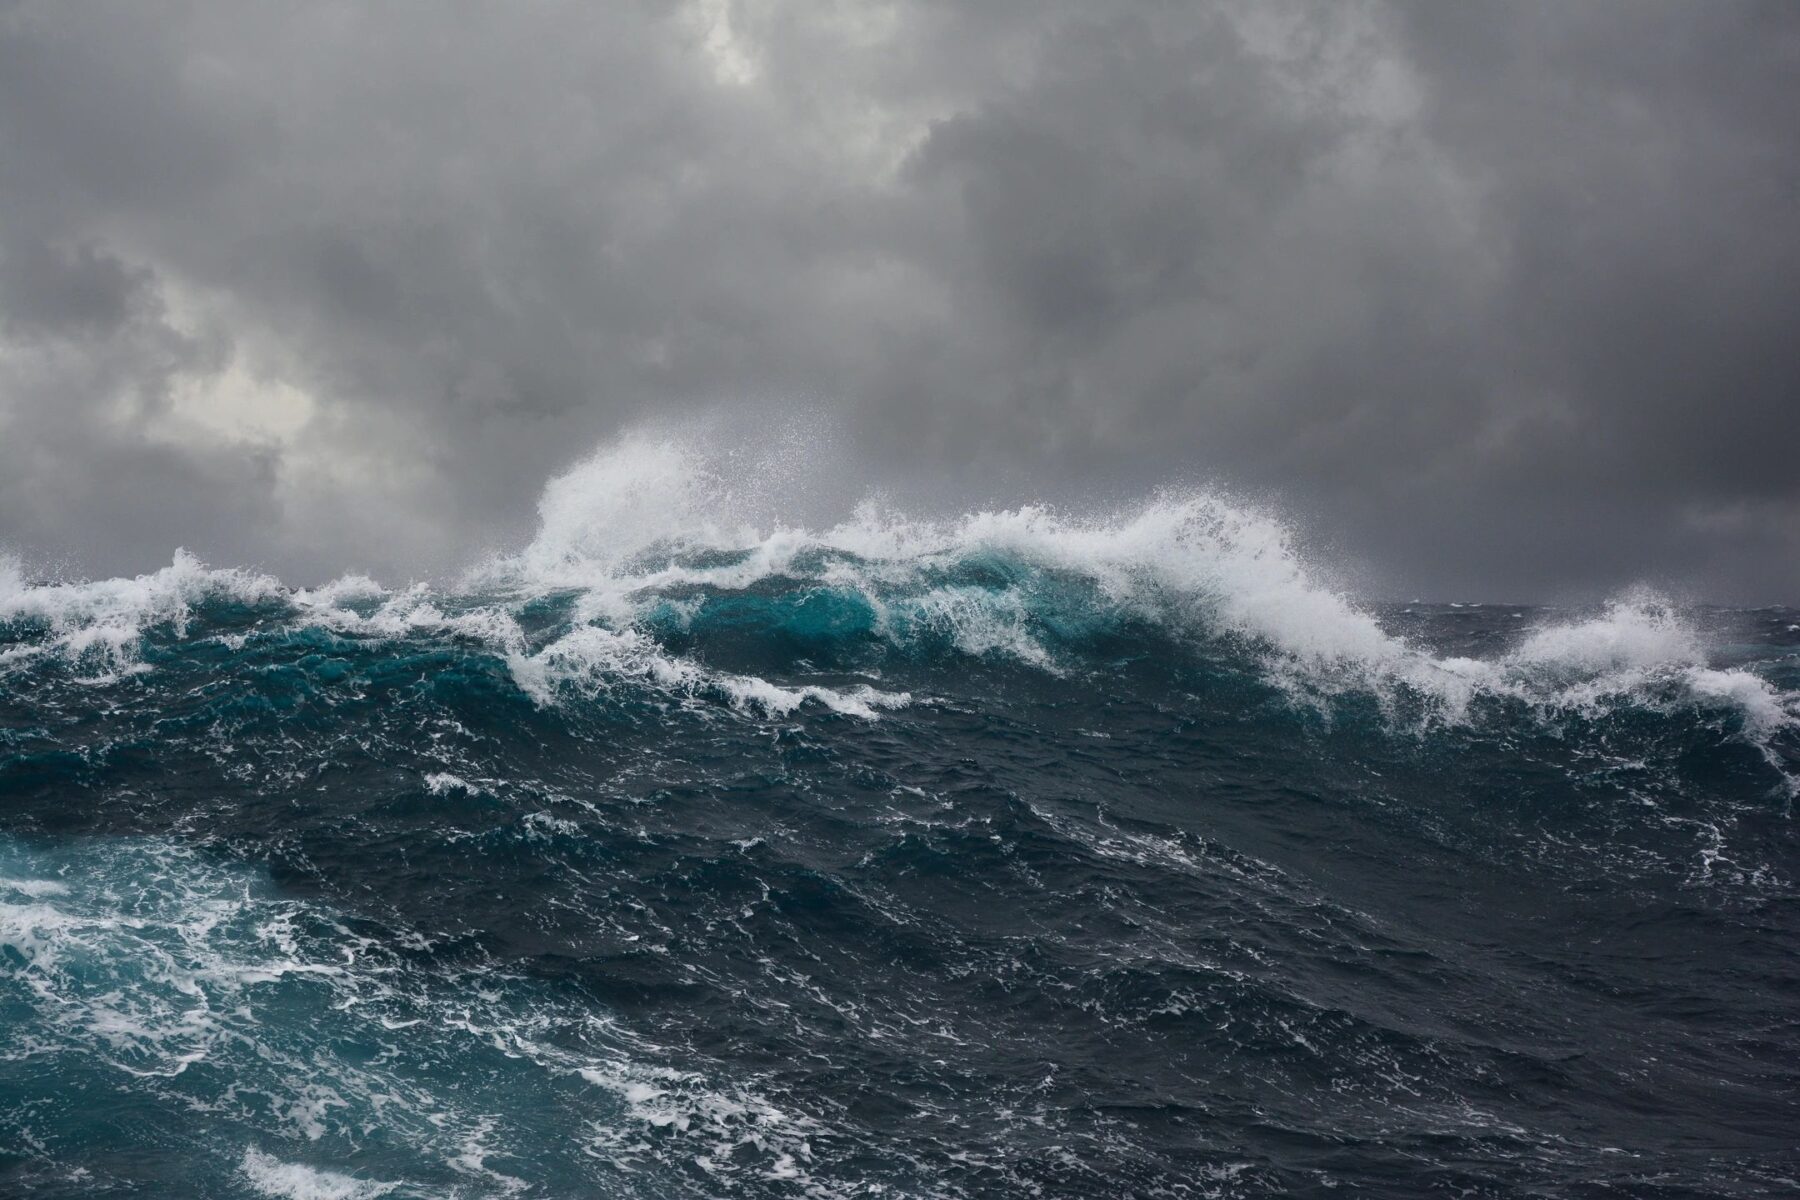 Crashing ocean waves